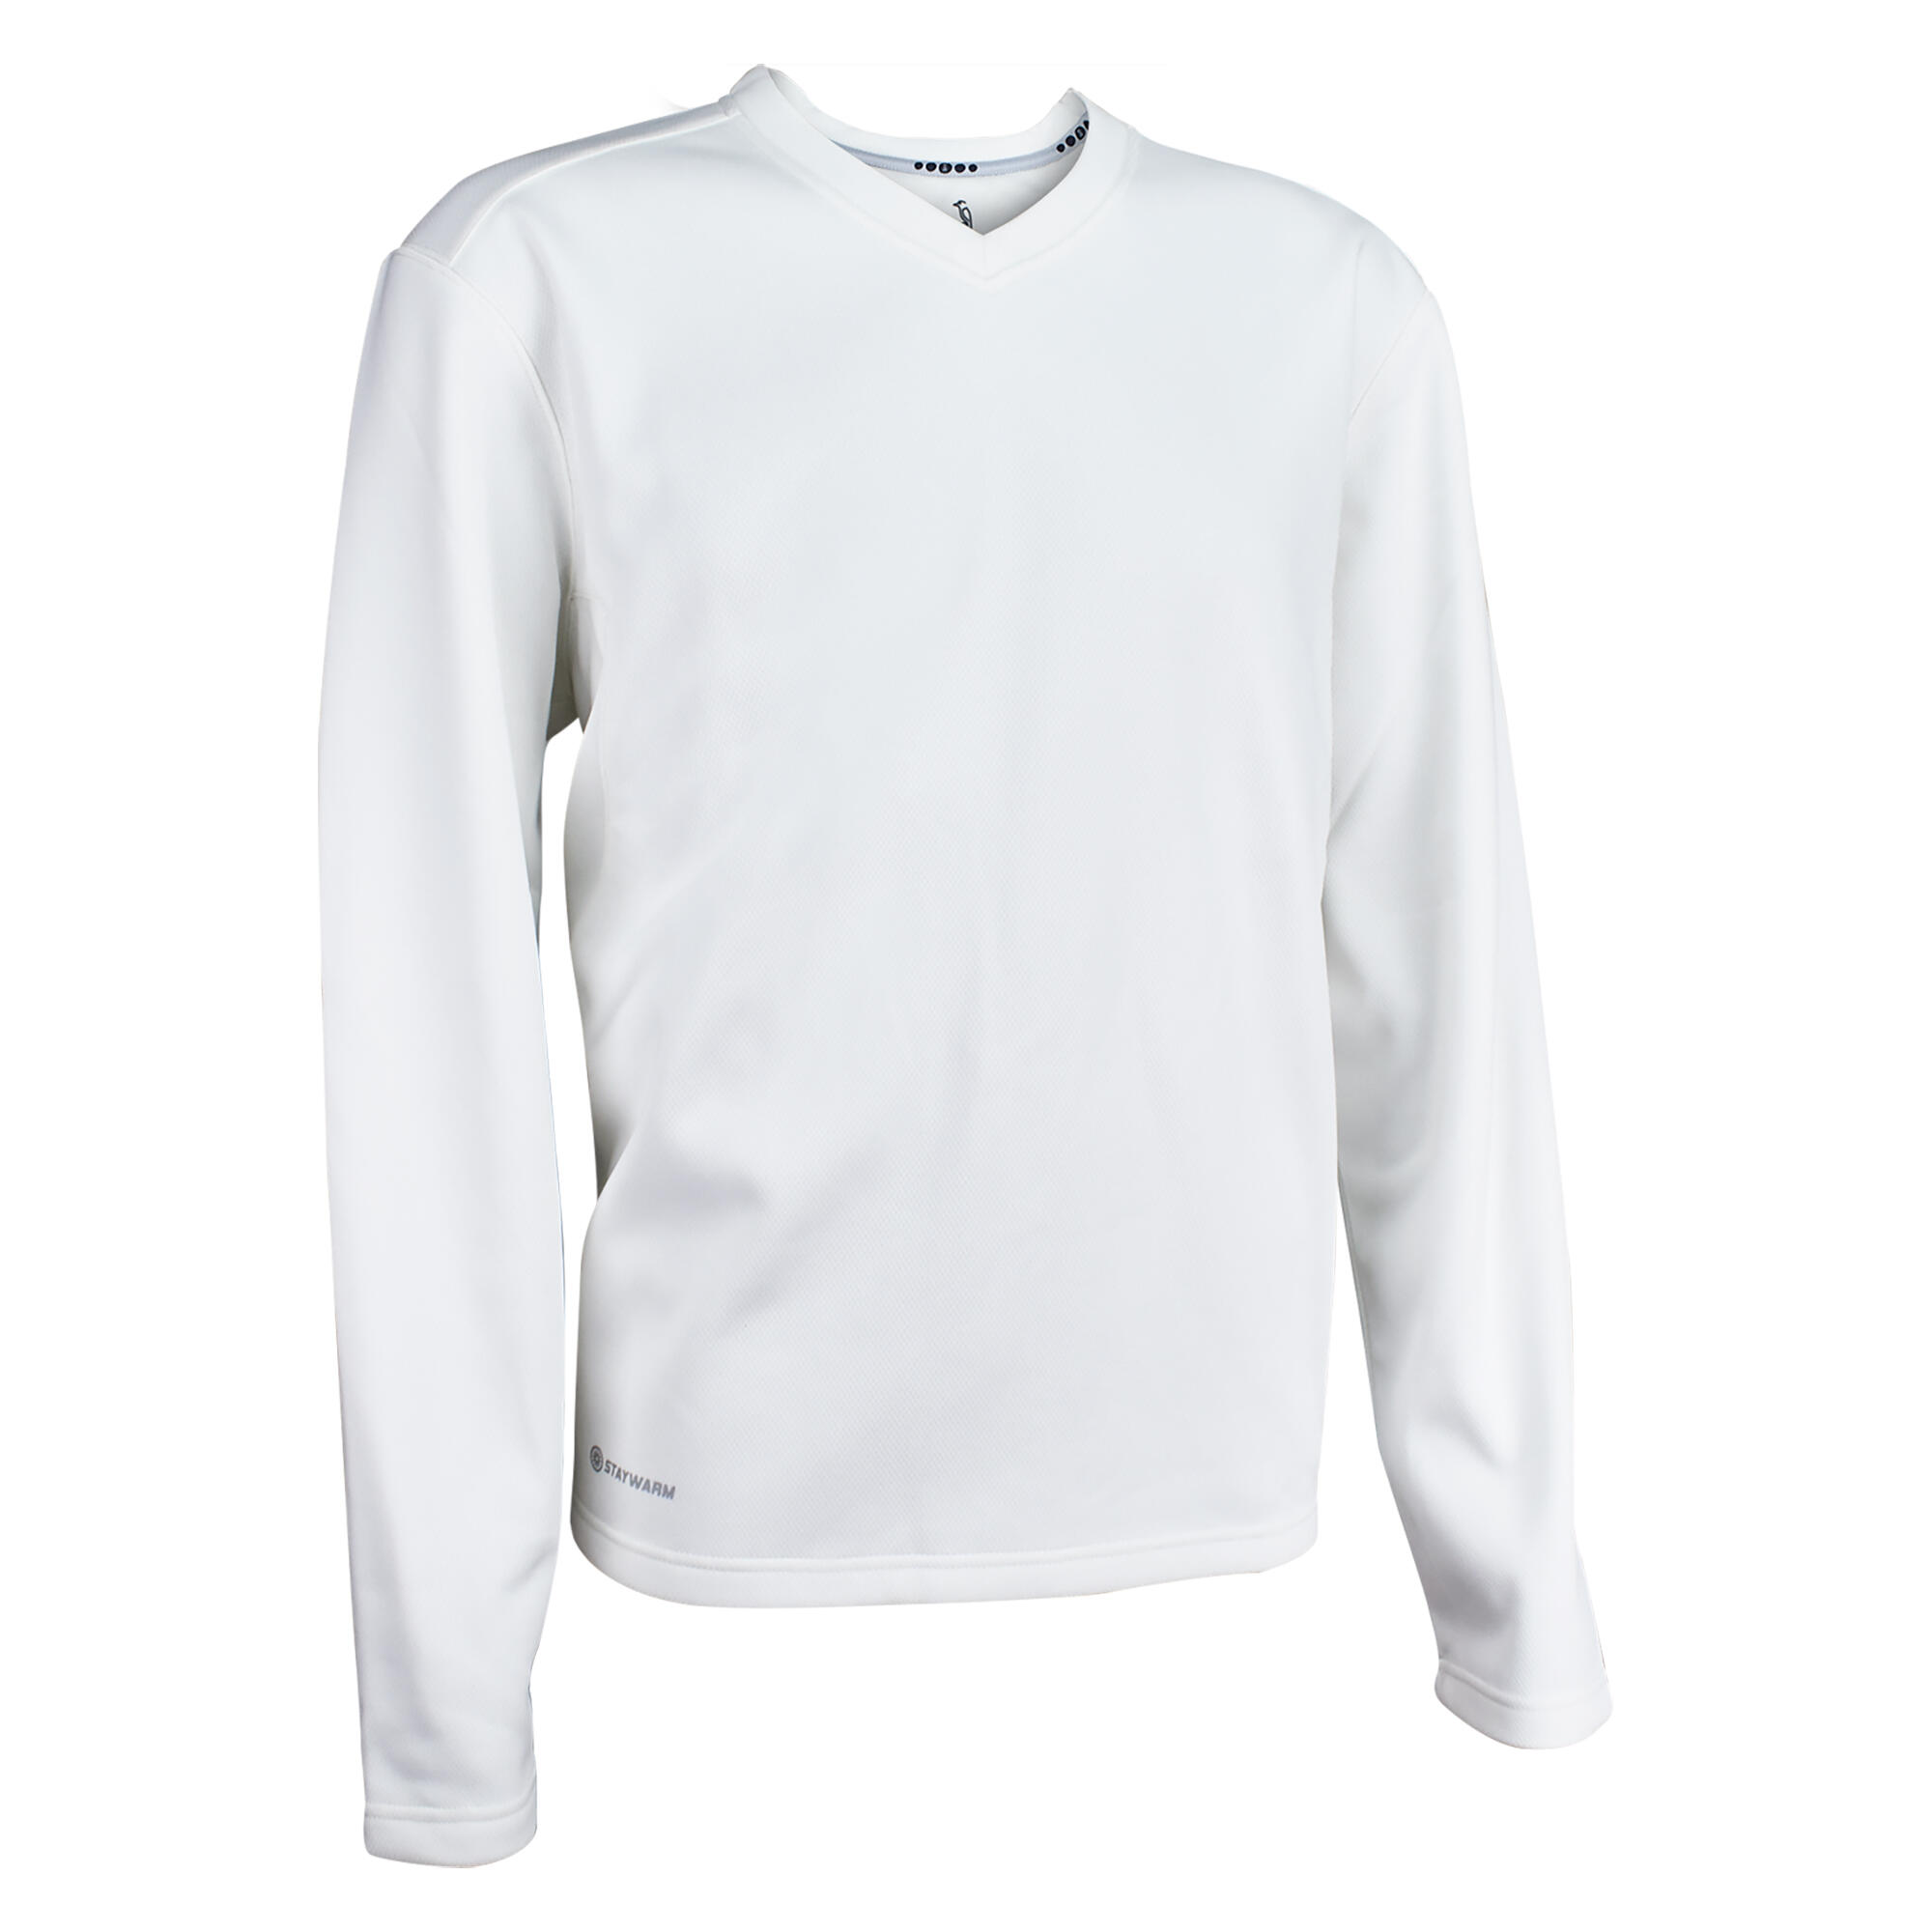 KOOKABURRA Kookaburra Junior Cricket Sweater White